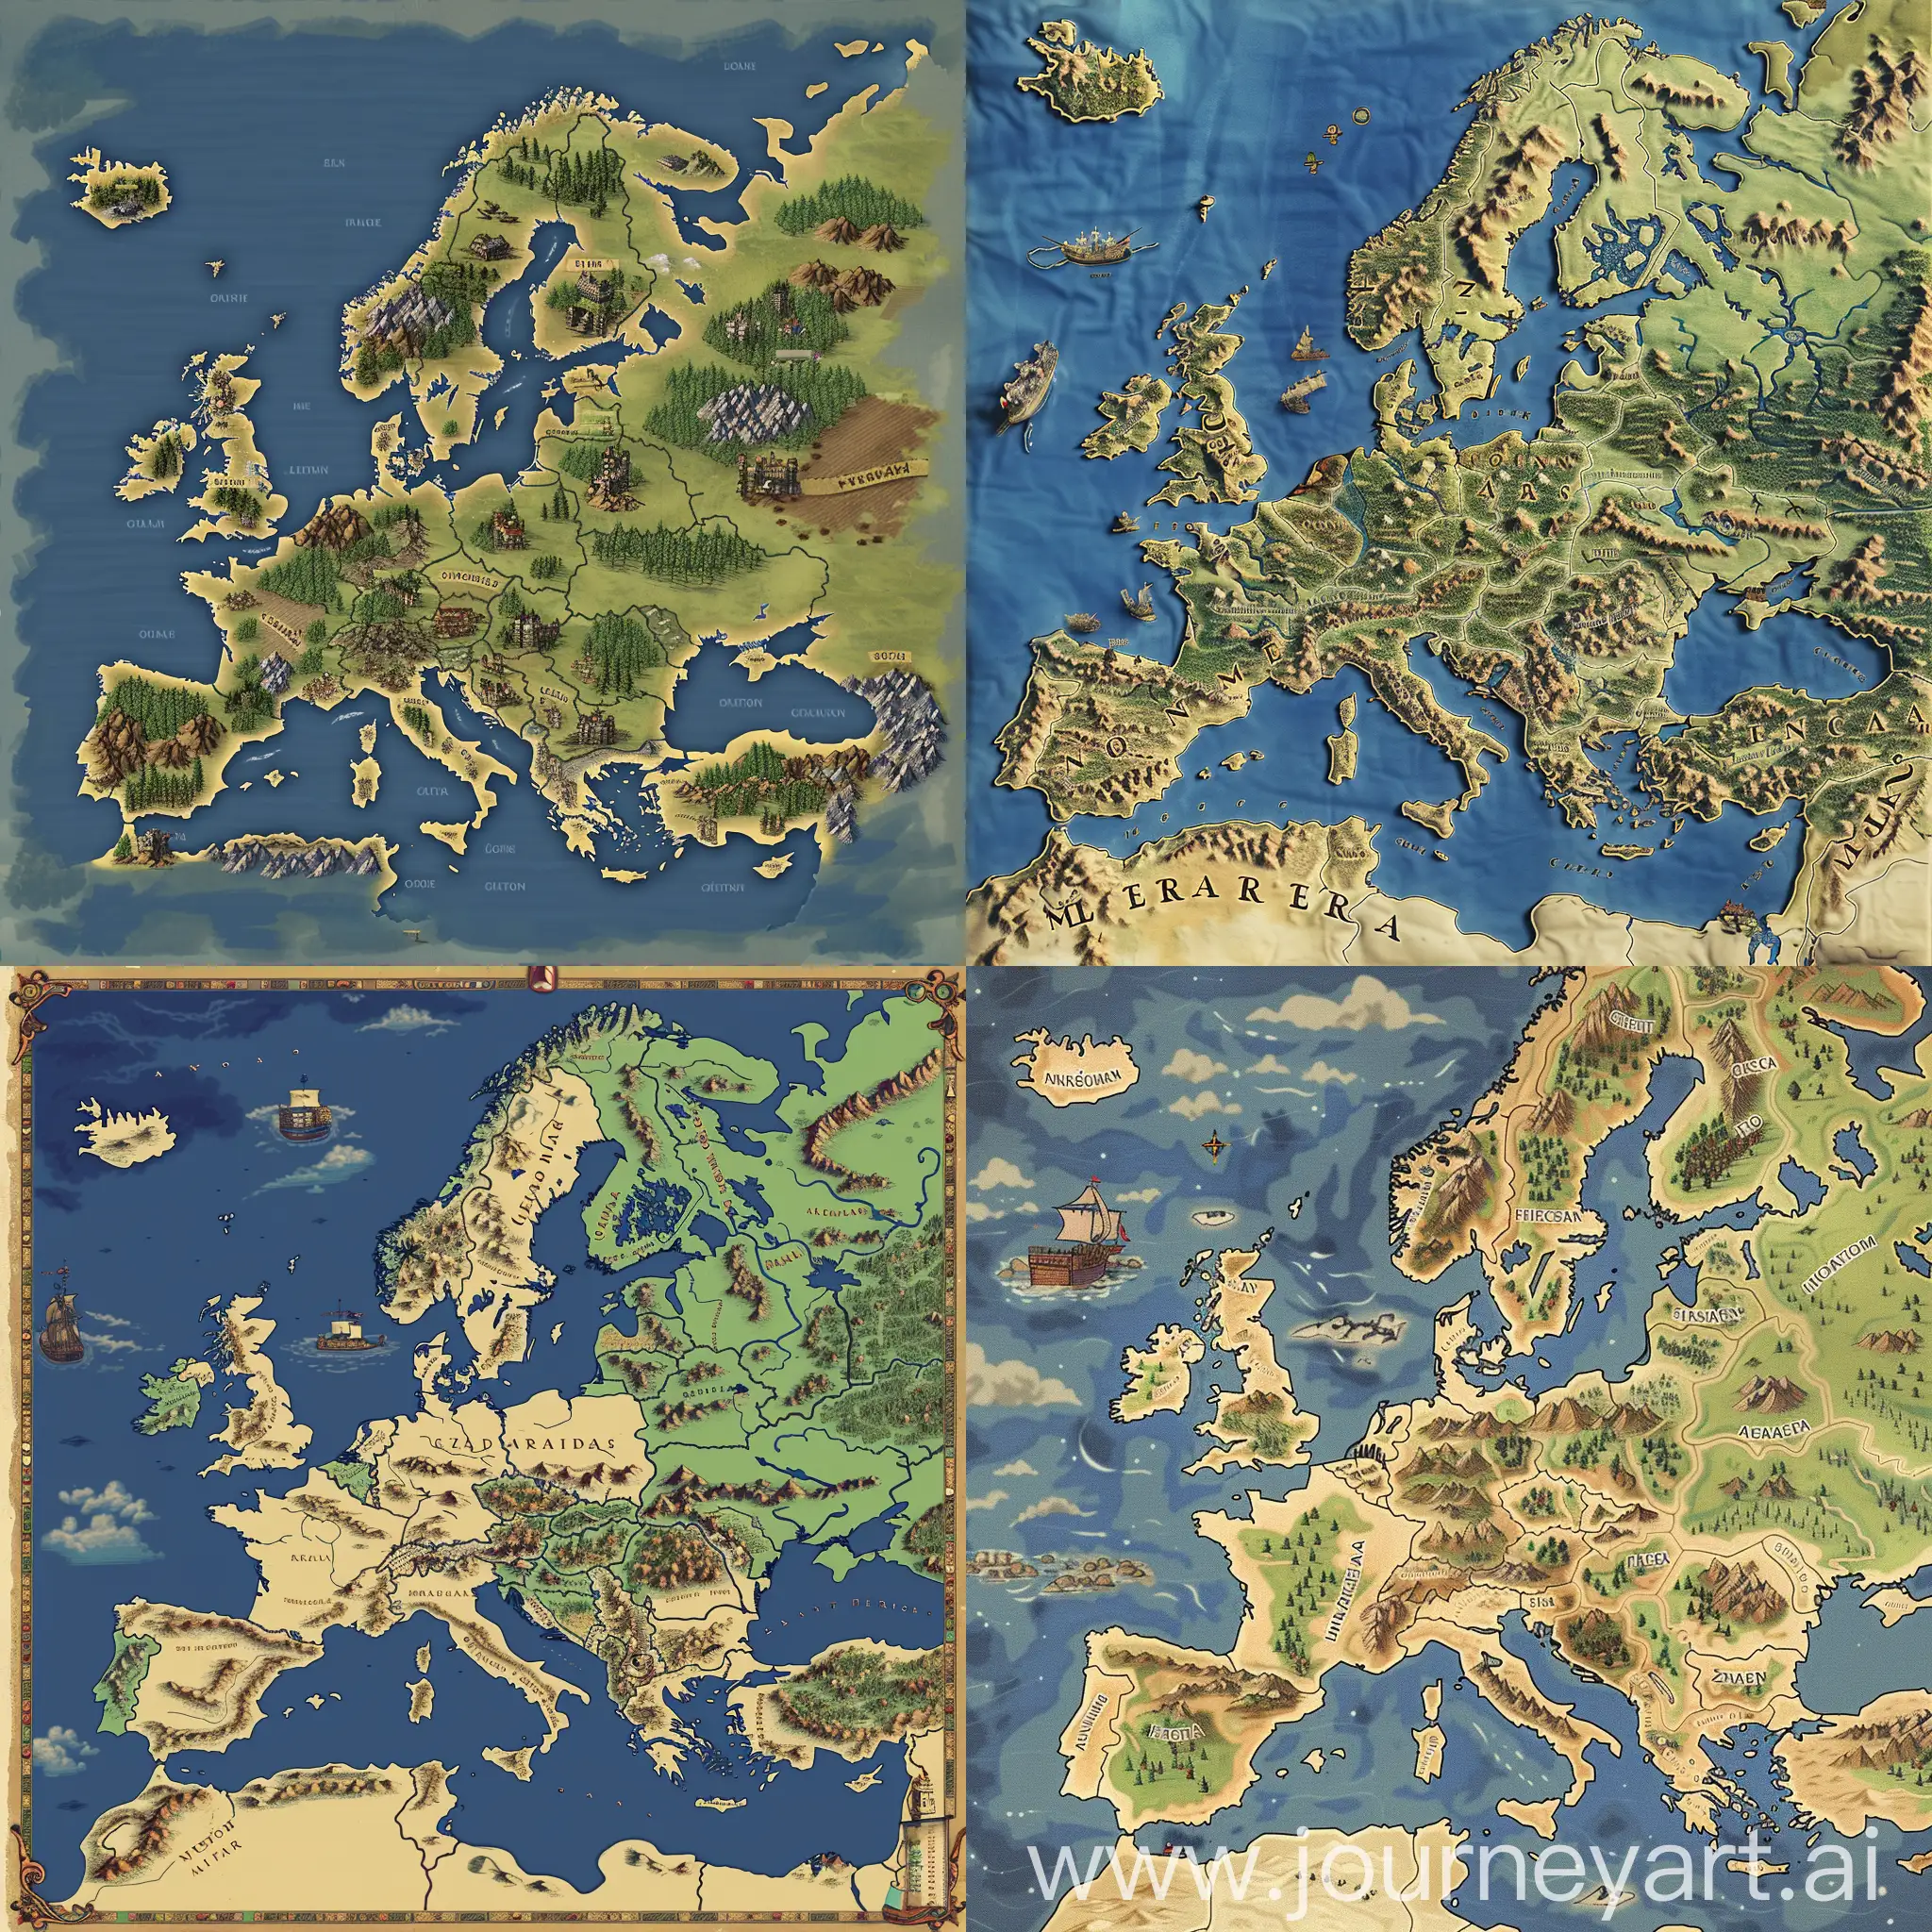 Нарисуй карту Европы для игры, страны и области должны быть разделены границами
